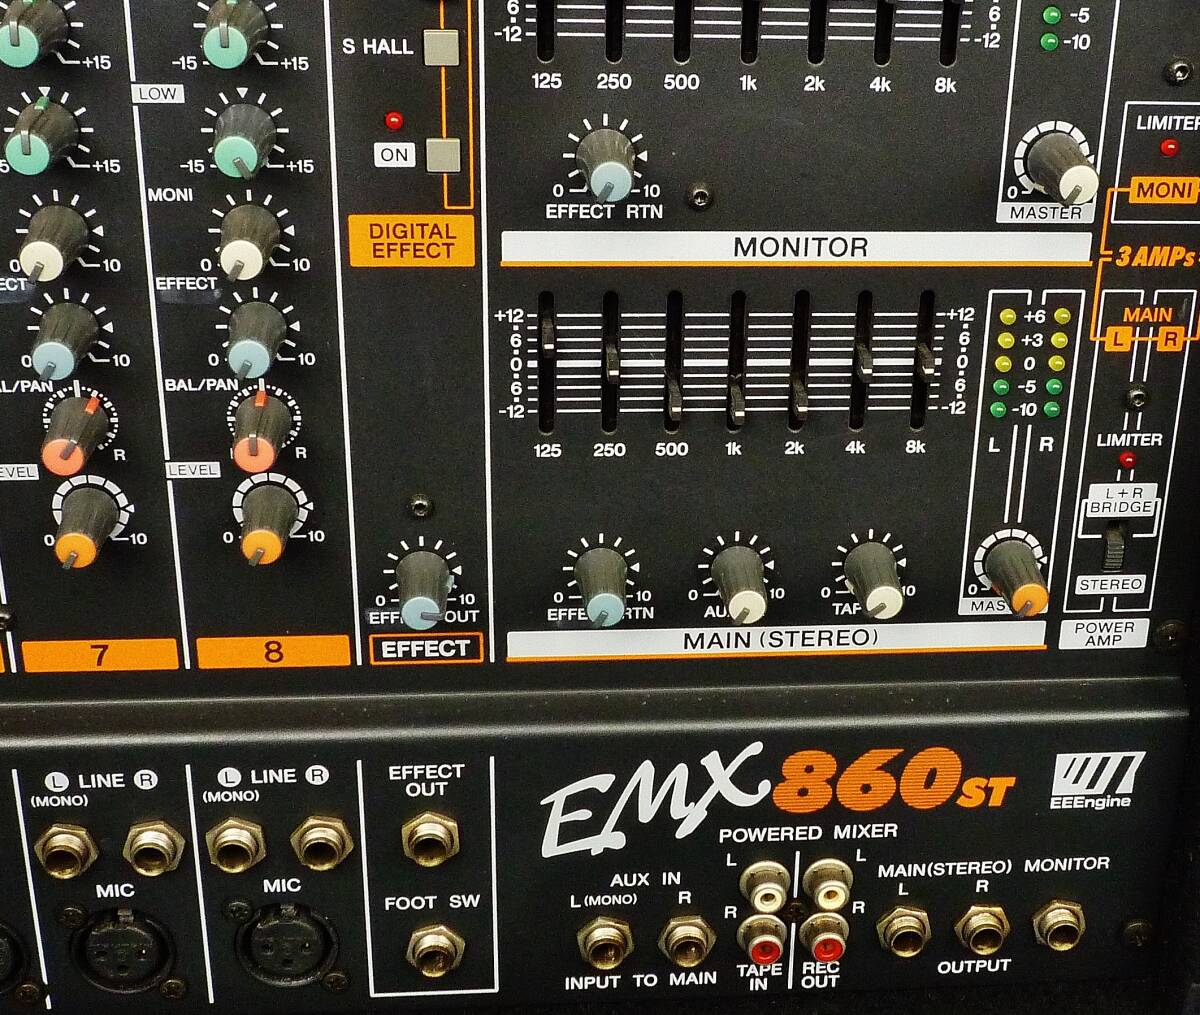 YAMAHA EMX-860 ST MAIN L-200W R-200W MONI-200W 3系統AMP 内蔵の画像3